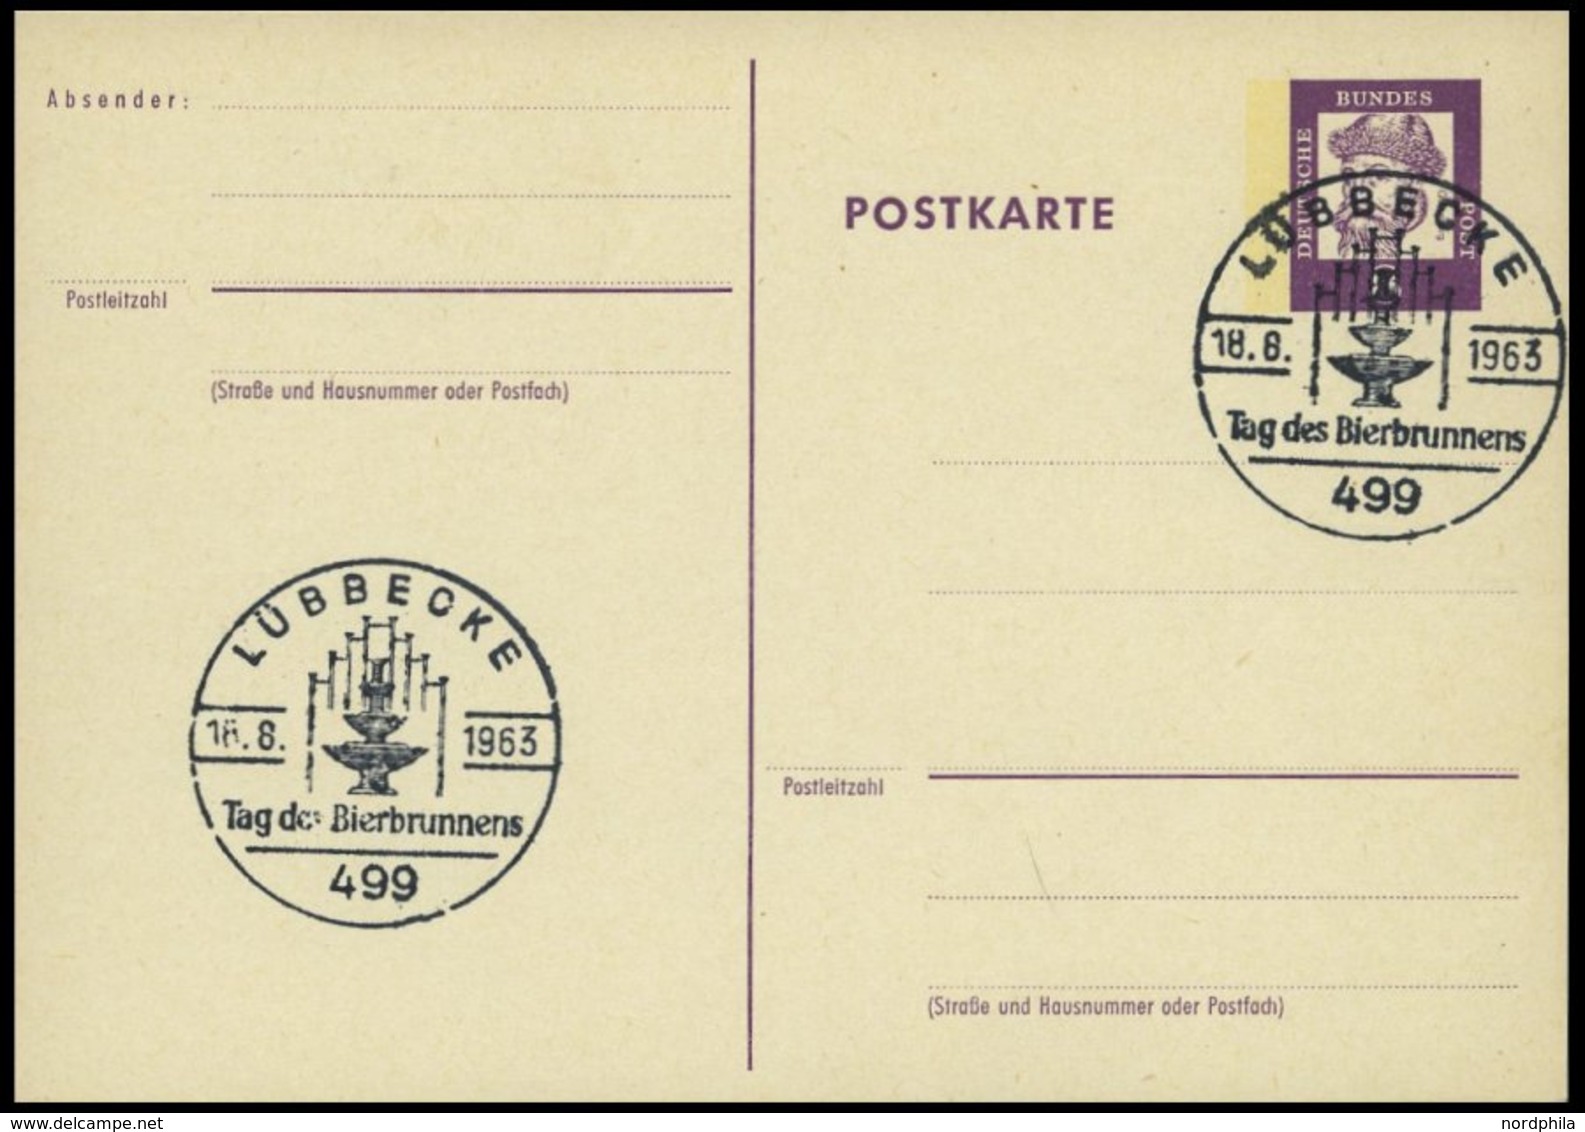 GANZSACHEN P 73 BRIEF, 1962, 8 Pf. Gutenberg, Postkarte In Grotesk-Schrift, Leer Gestempelt Mit Sonderstempel LÜBBECKE T - Collections